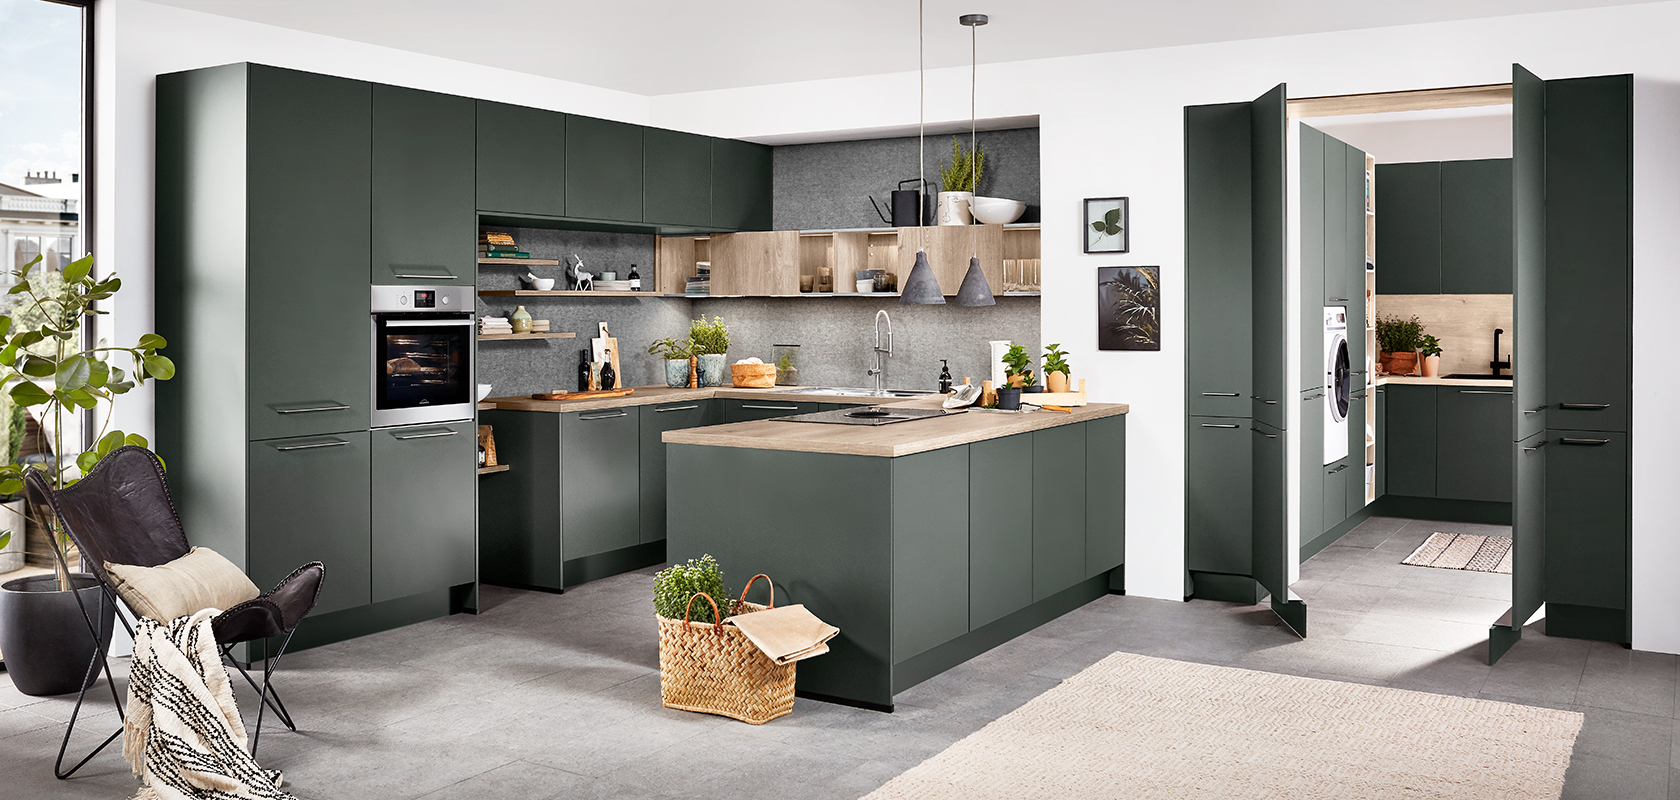 Cocina moderna con gabinetes verdes, acentos de madera y electrodomésticos de acero inoxidable, con una isla central y un diseño espacioso y bien iluminado para un hogar contemporáneo.